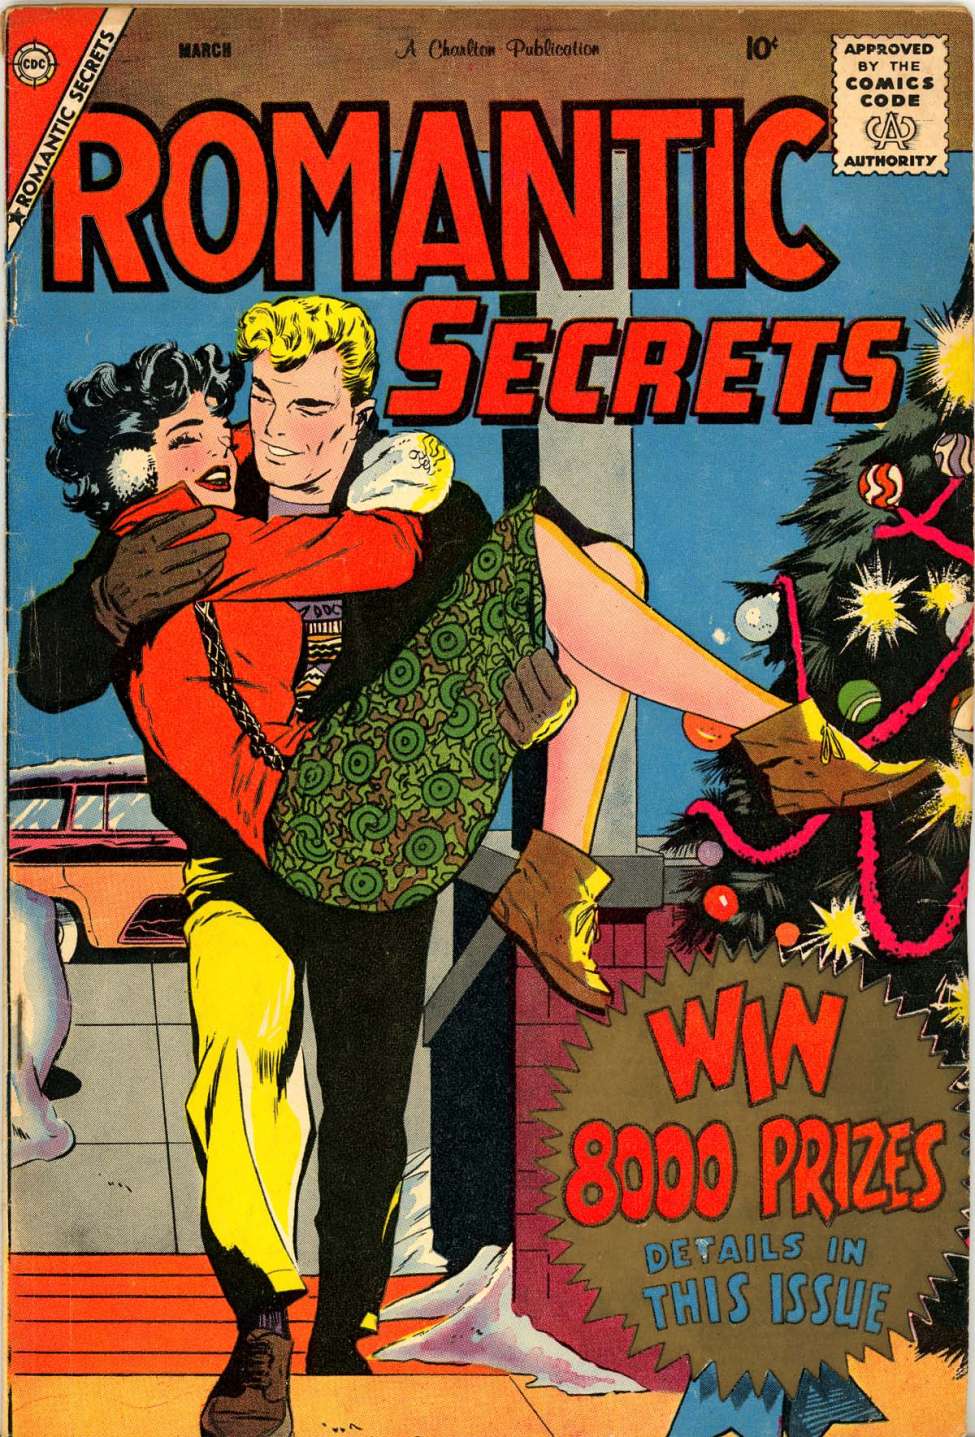 Book Cover For Romantic Secrets 20